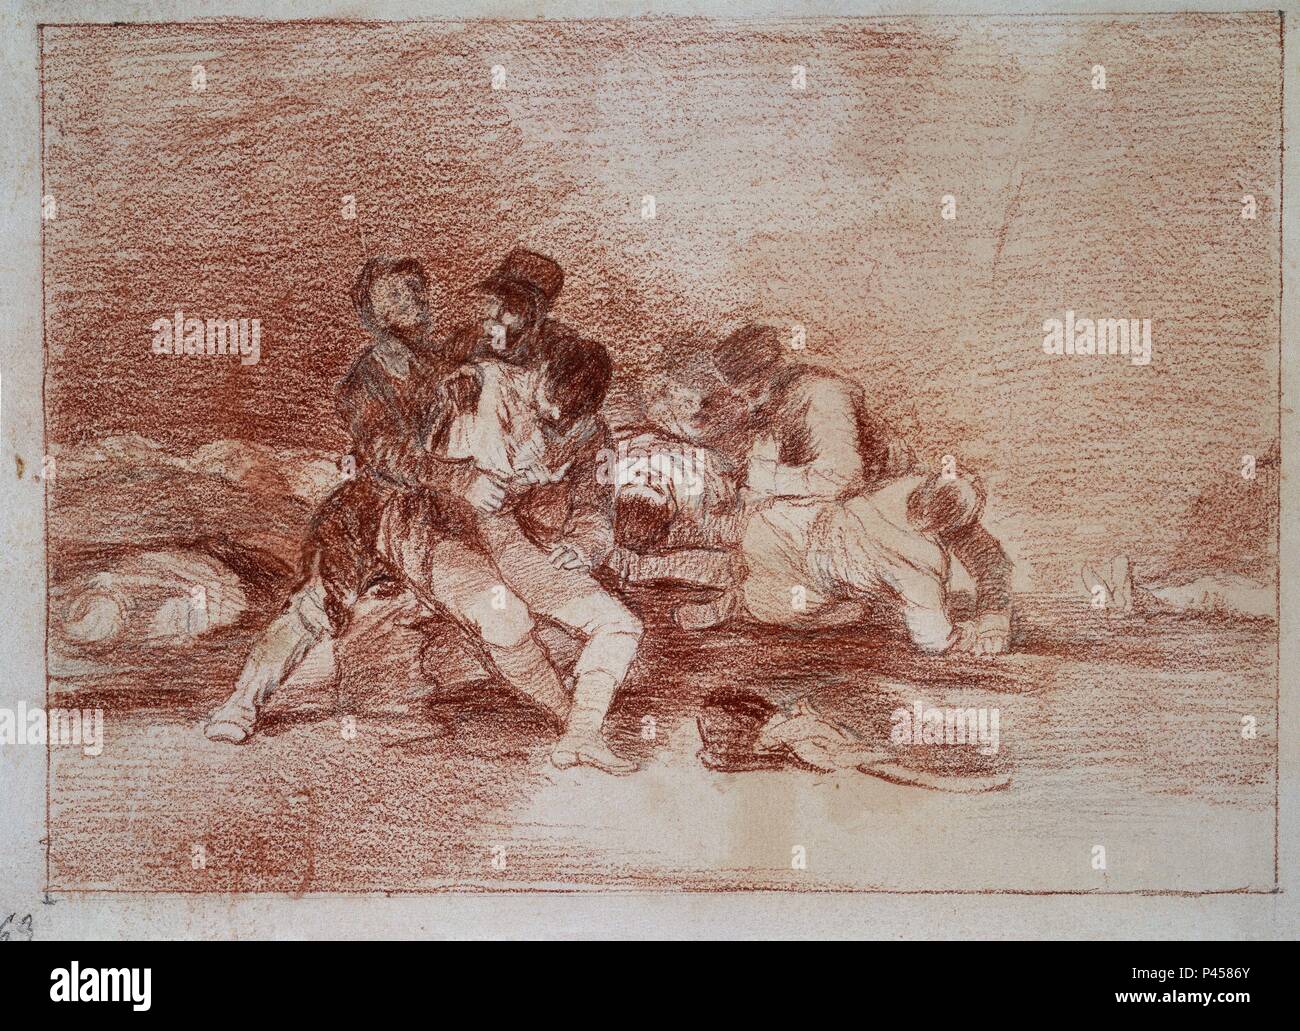 DESASTRES DE LA GUERRA (1810-1815) - DESASTRE Nº 20 - CURARLOS Y A OTRA - SANGUINA. Author: Francisco de Goya (1746-1828). Location: MUSEO DEL PRADO-DIBUJOS, MADRID, SPAIN. Stock Photo